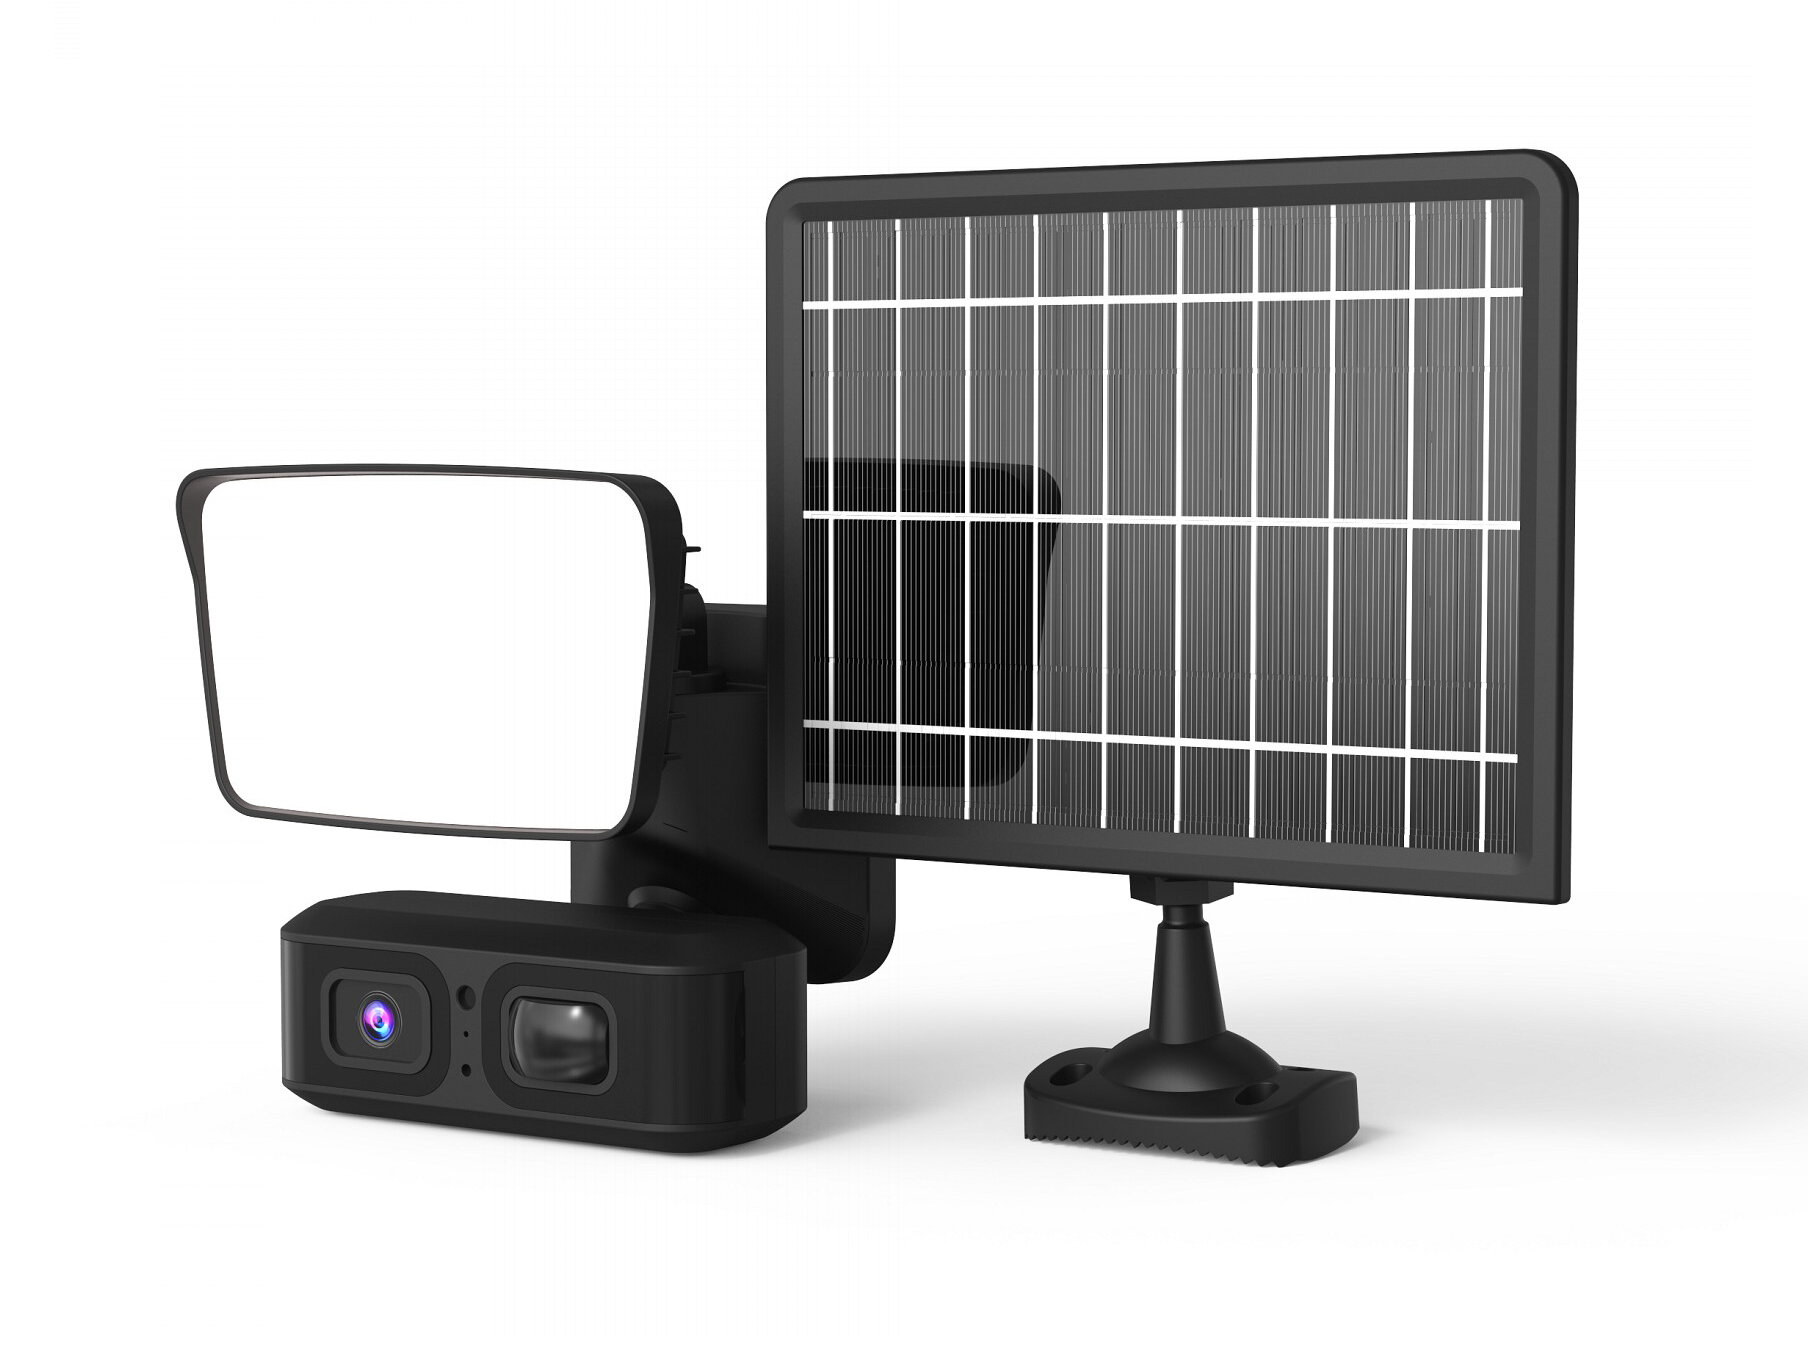 ЛинкСоляр QB25G (8G) (O43933LU) - автономная наружная облачная Full HD камера 4П с солнечной батареей и датчиком движения.